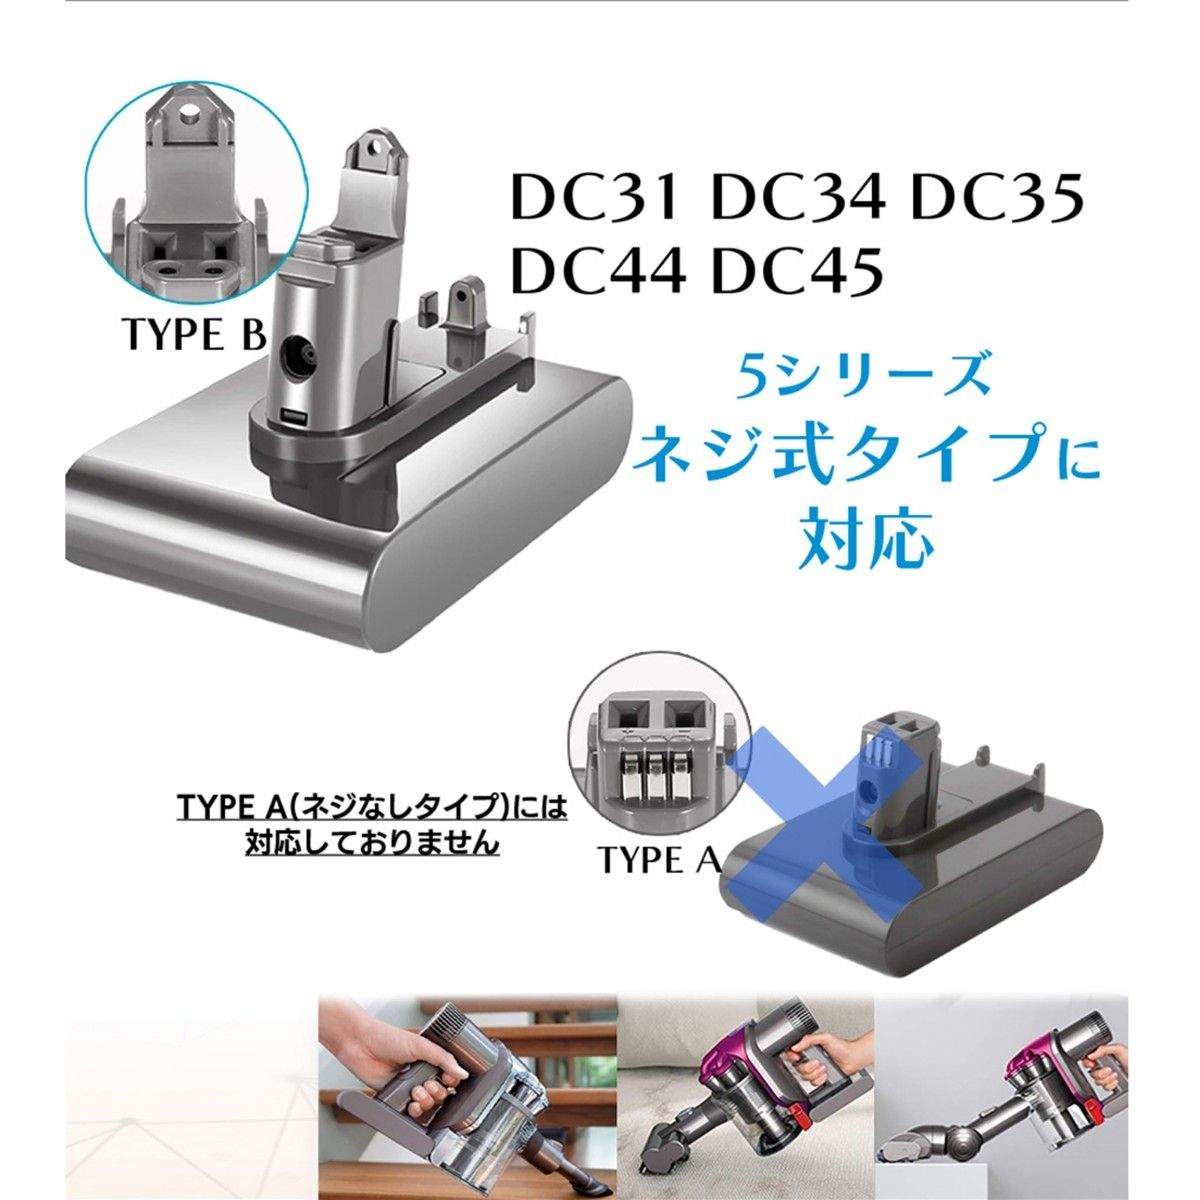 2個 ダイソン DC31 DC34 DC35 DC44 DC45 バッテリー 大容量 2200mAh ネジ式 dyson 掃除機